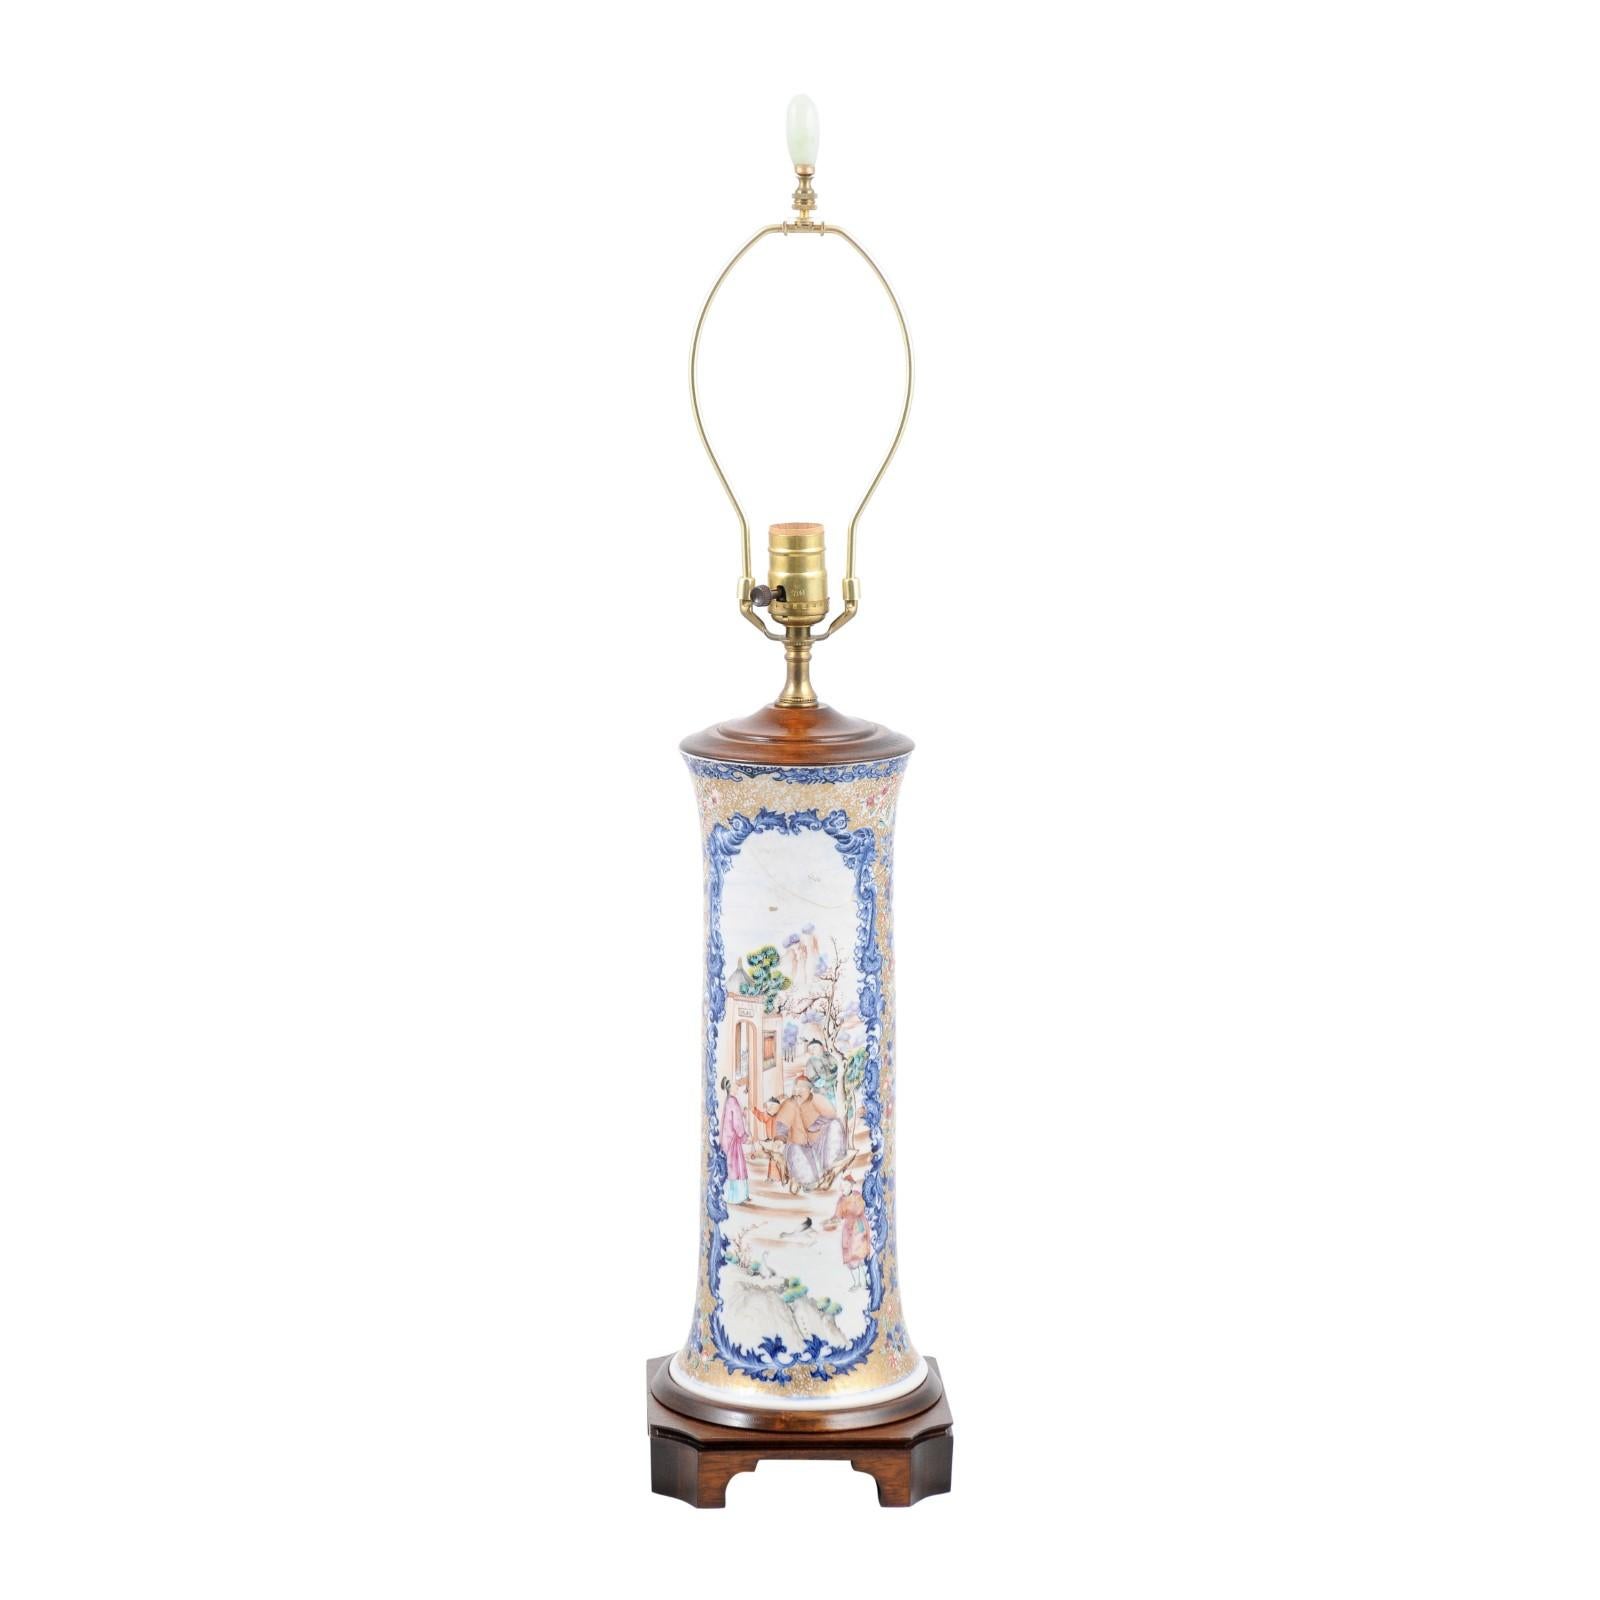 Chinesische Export-Porzellanvase aus dem 18. Jahrhundert, verdrahtet als Lampe